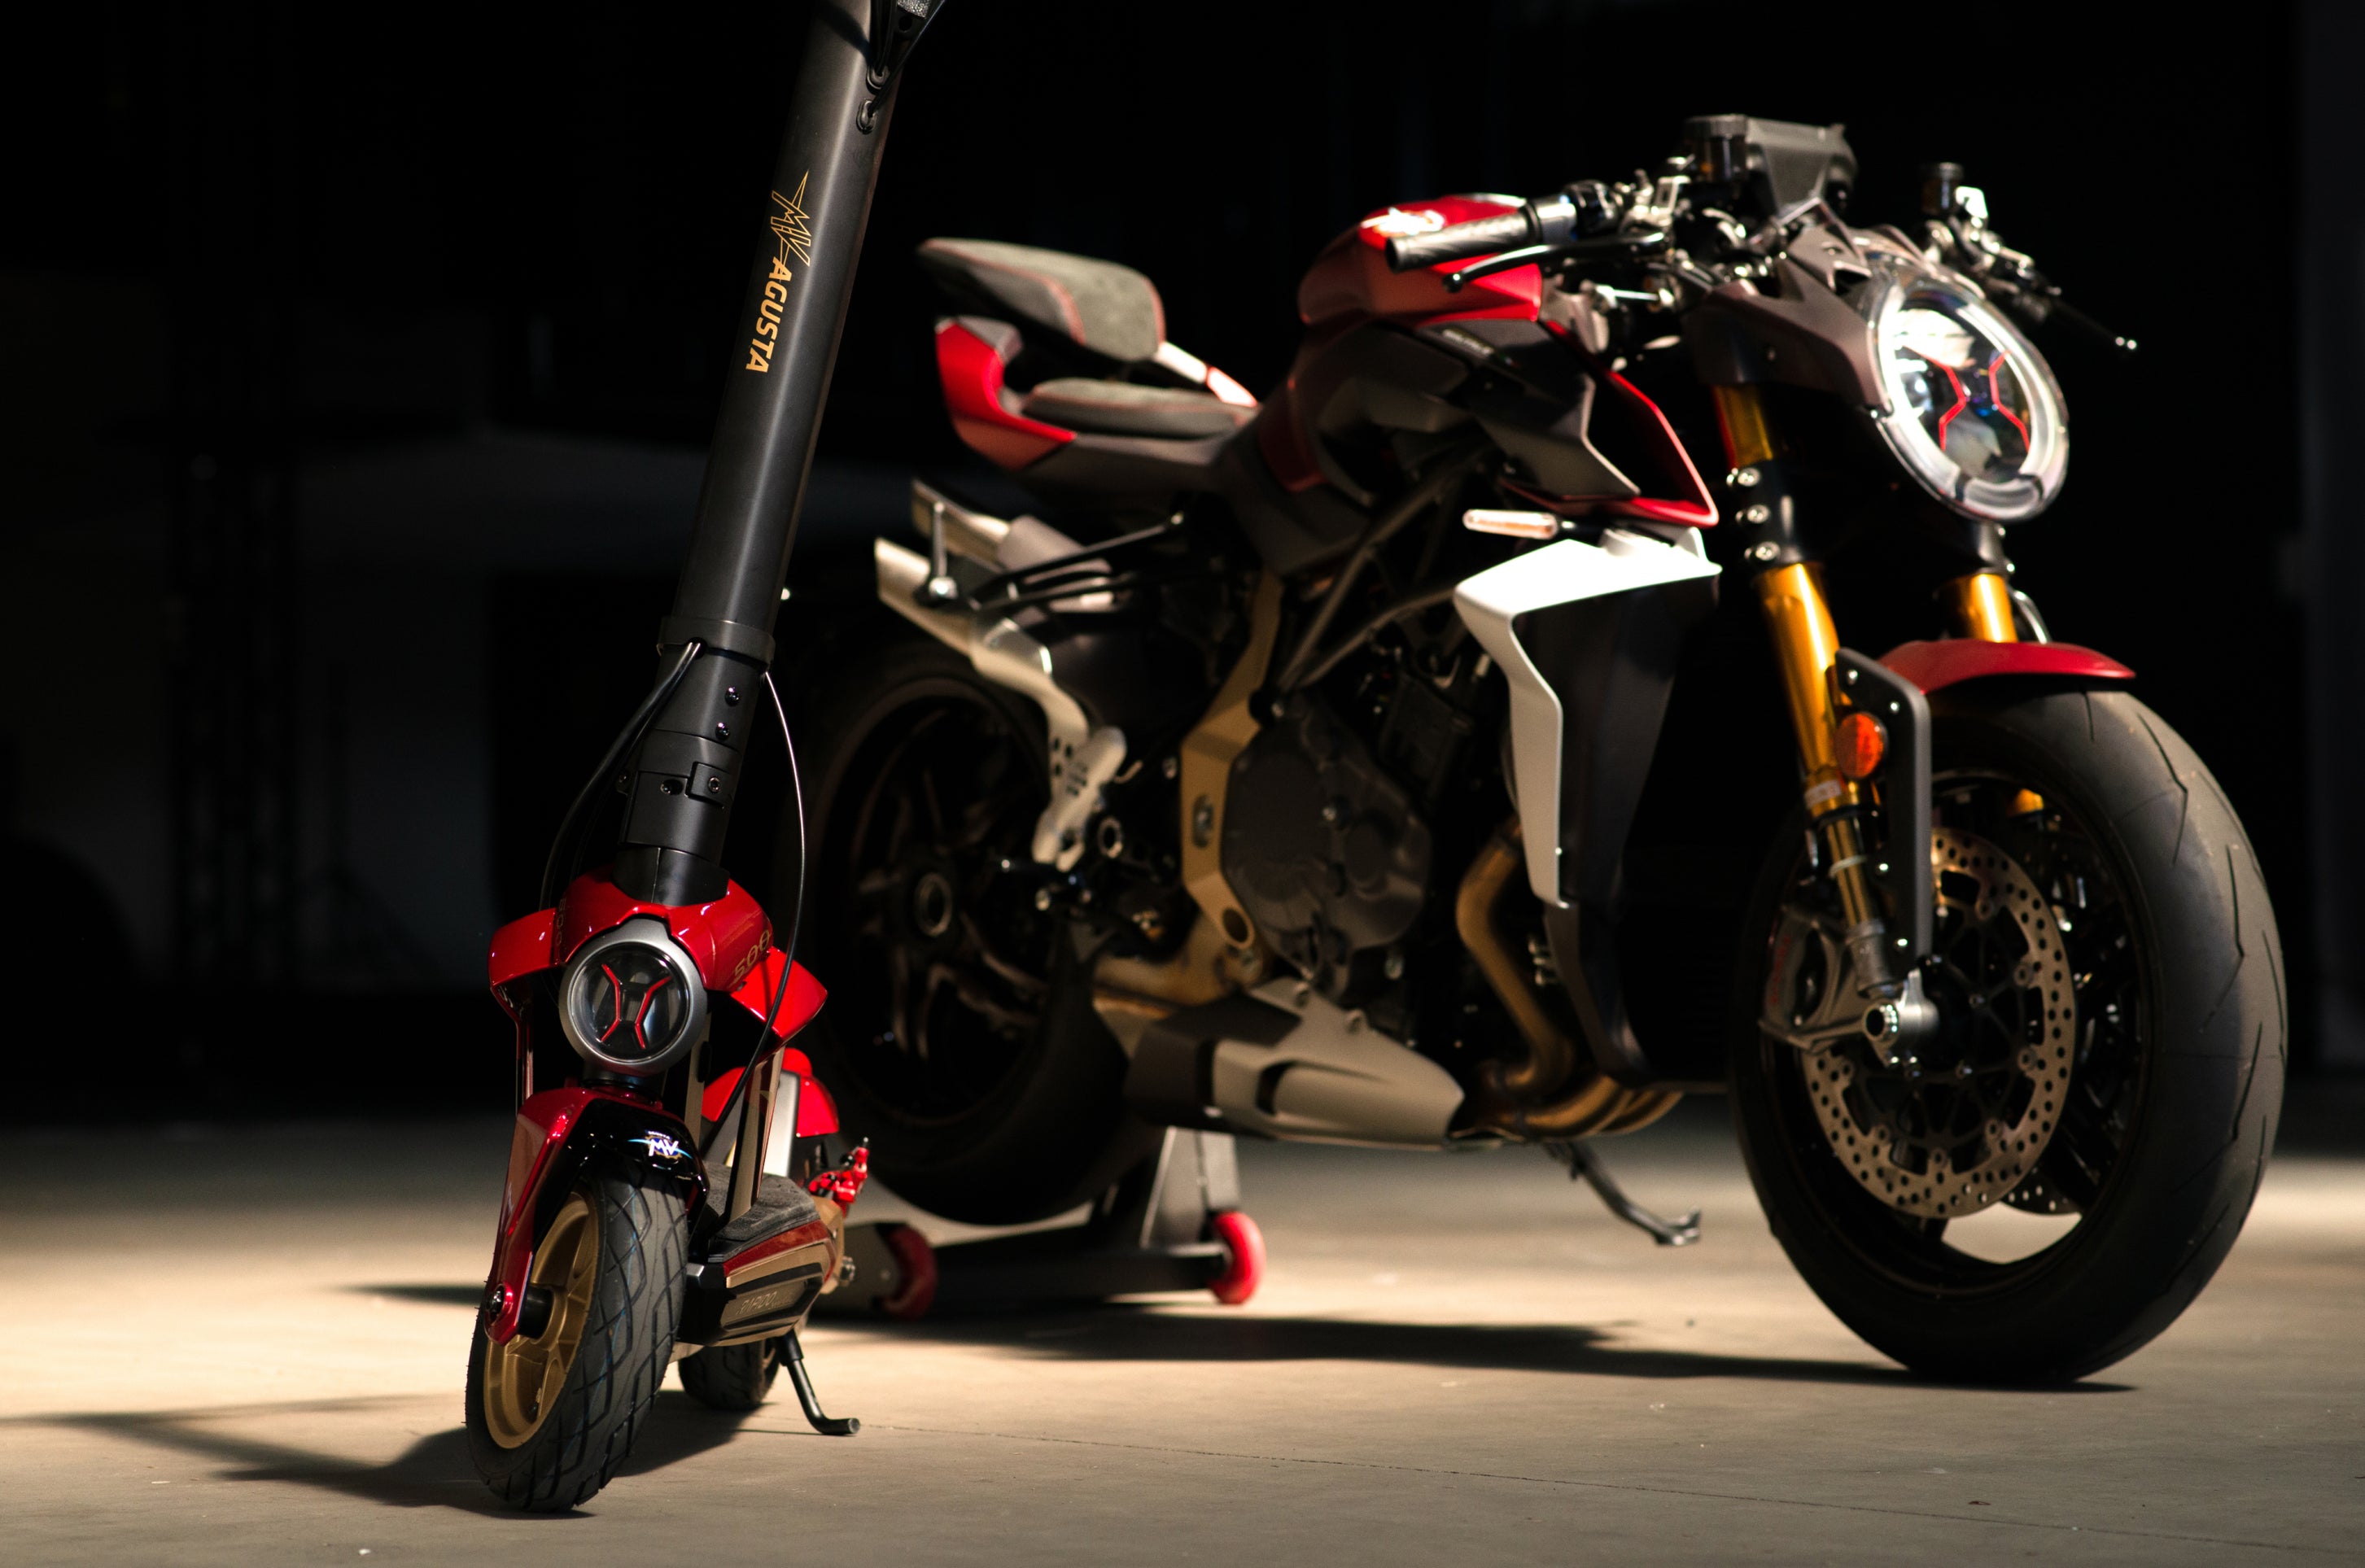 Rapido Serie Oro — Ispirato alle moto MV Agusta